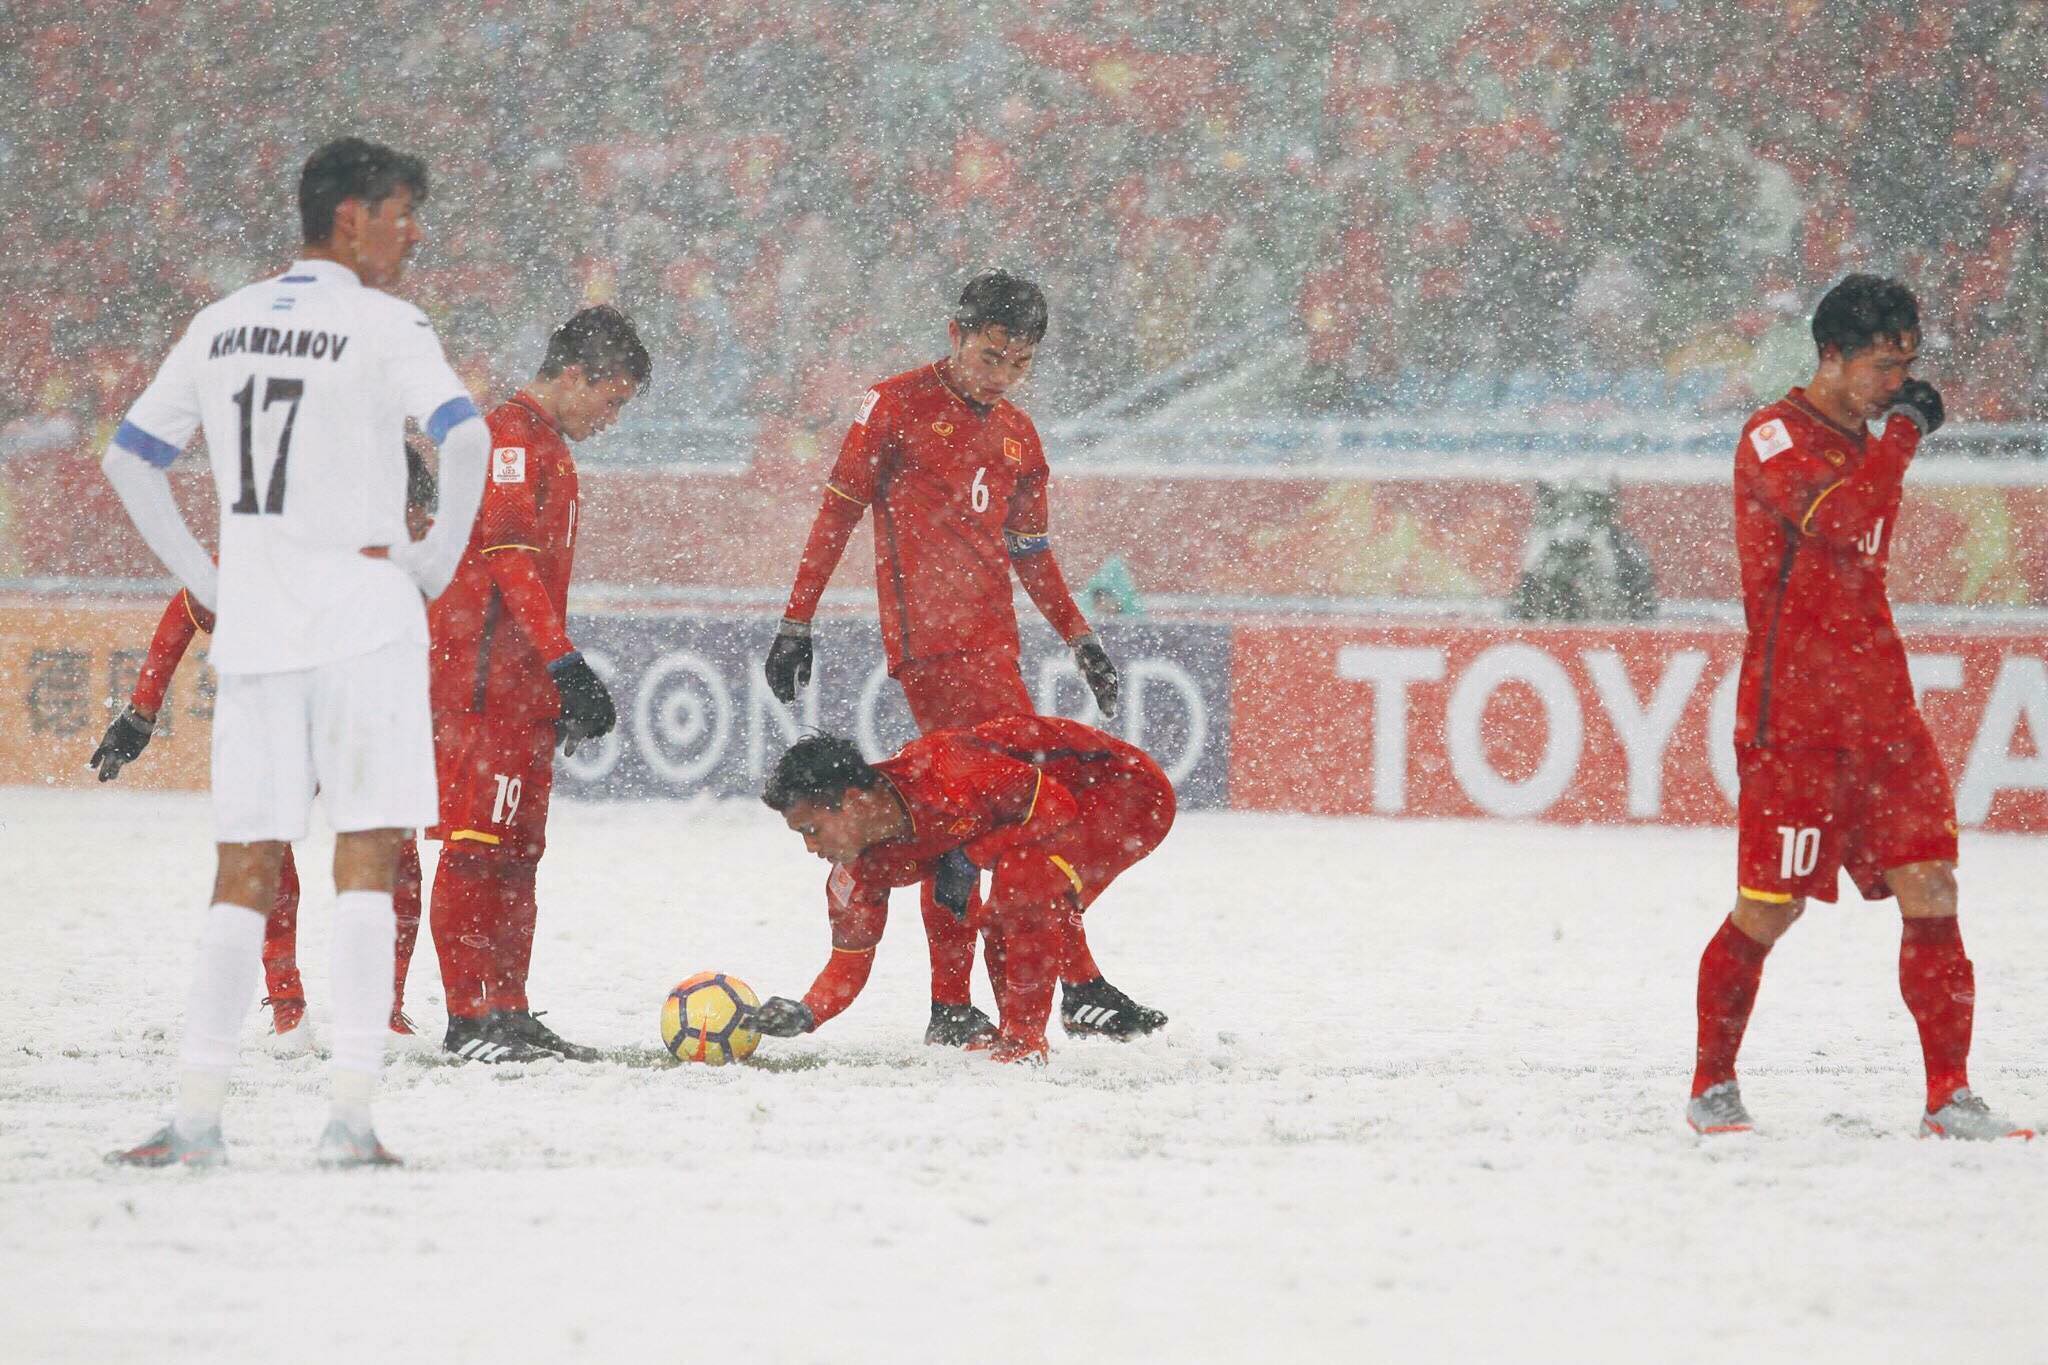 Các cầu thủ U23 Việt Nam đồng loạt lên tiếng xin lỗi và cảm ơn người hâm mộ